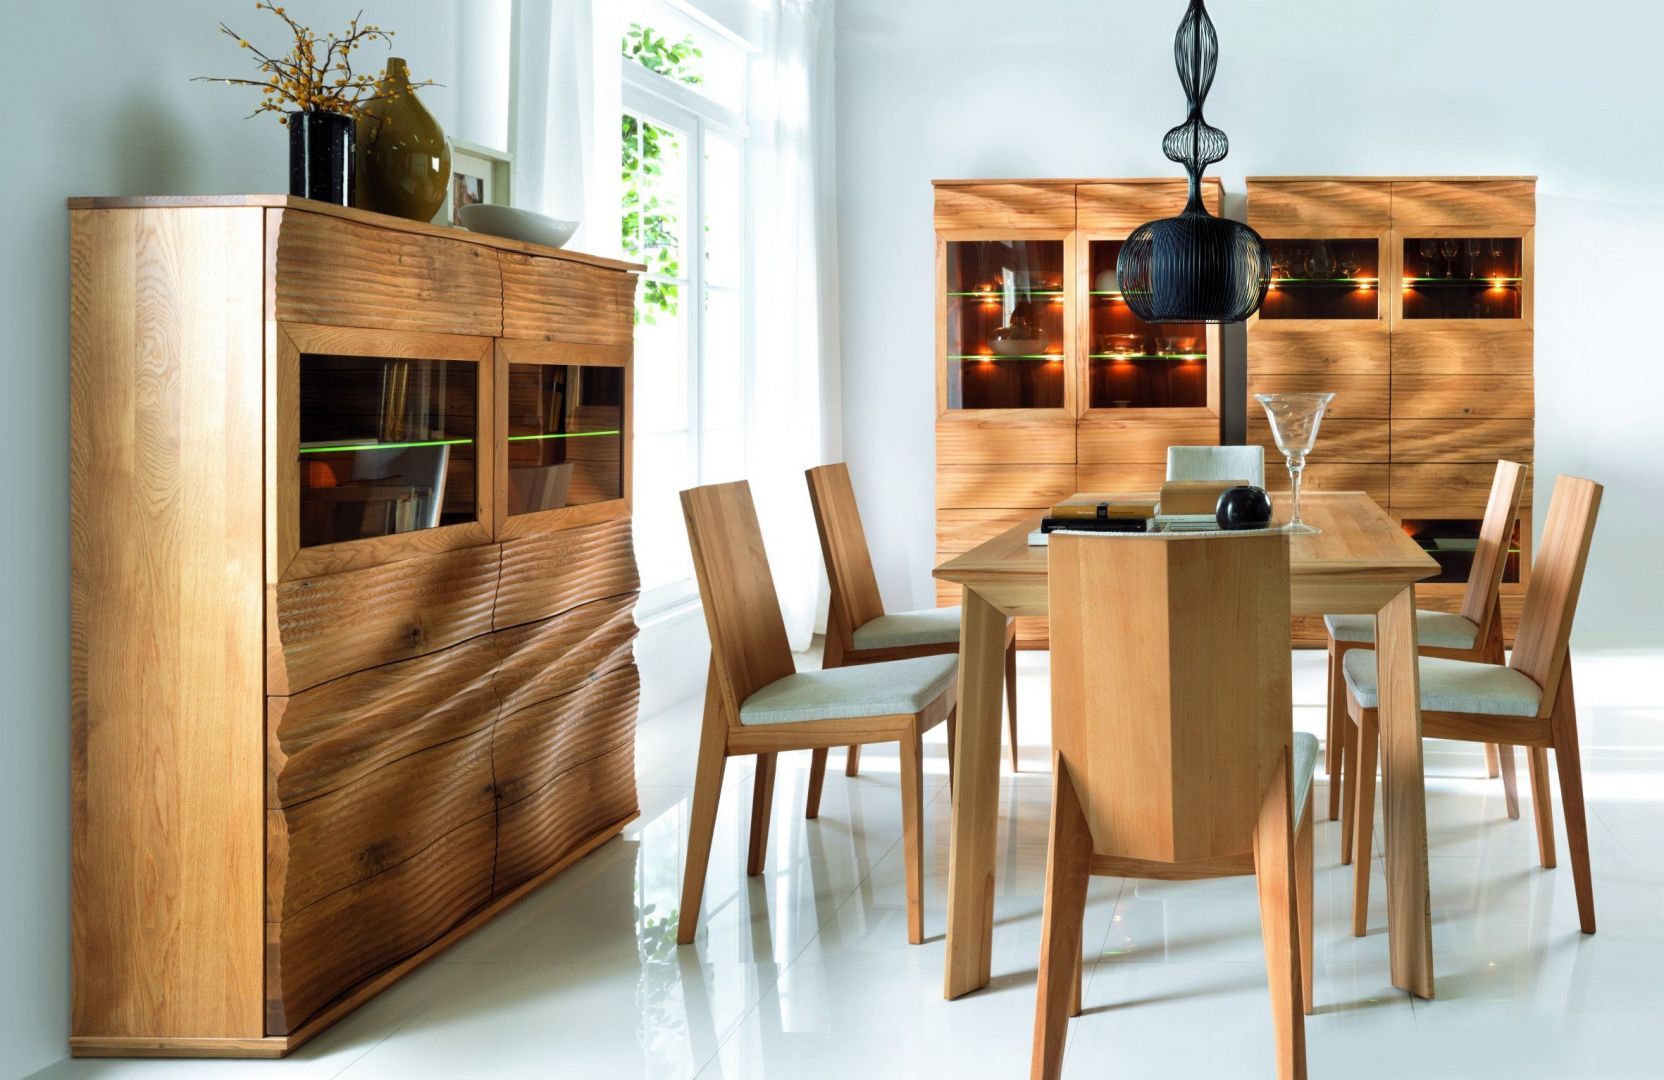 Эко мебель сайт. Десинг Вуд мебель. Деревянная мебель в интерьере. Стильная мебель из дерева. Мебель в эко стиле.